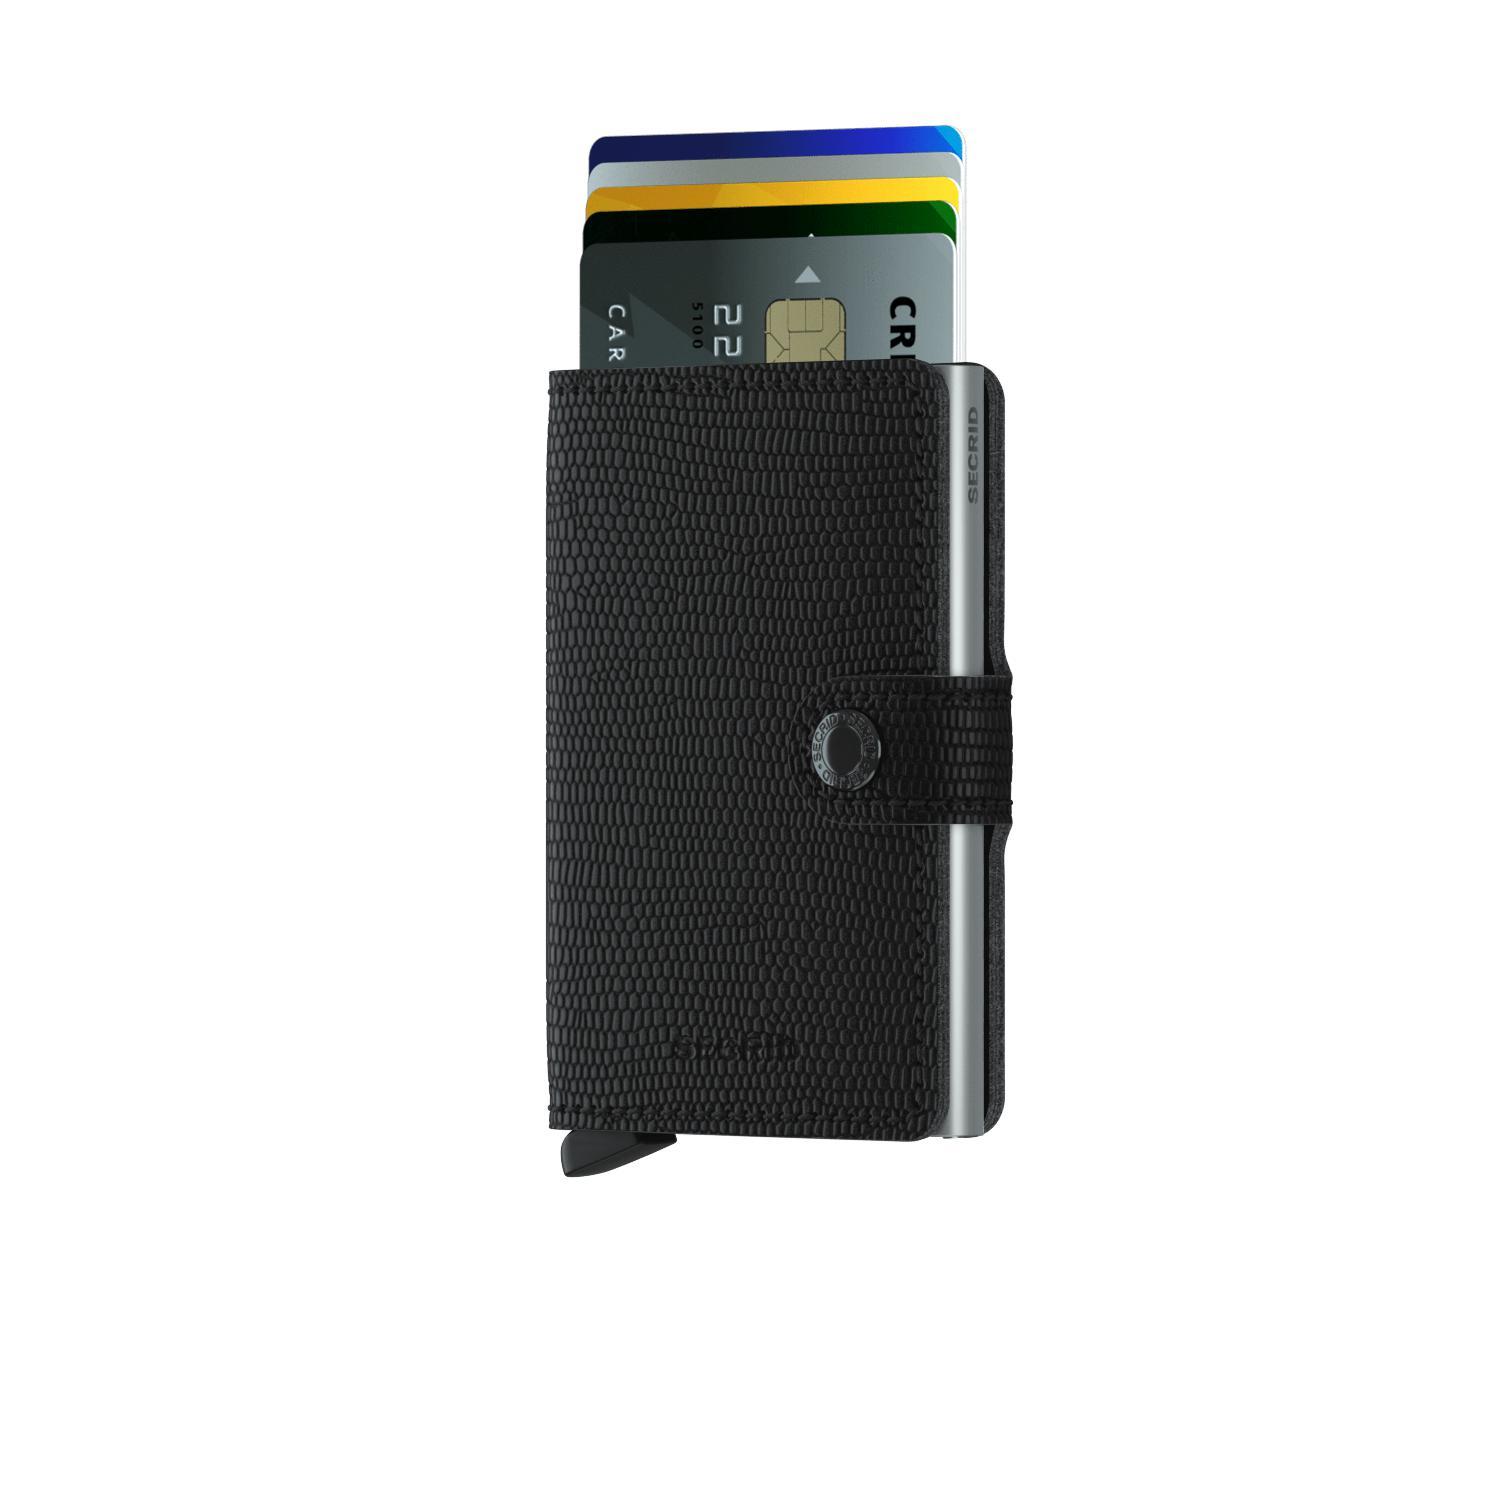 Wallet - SECRID Miniwallet Rango Black